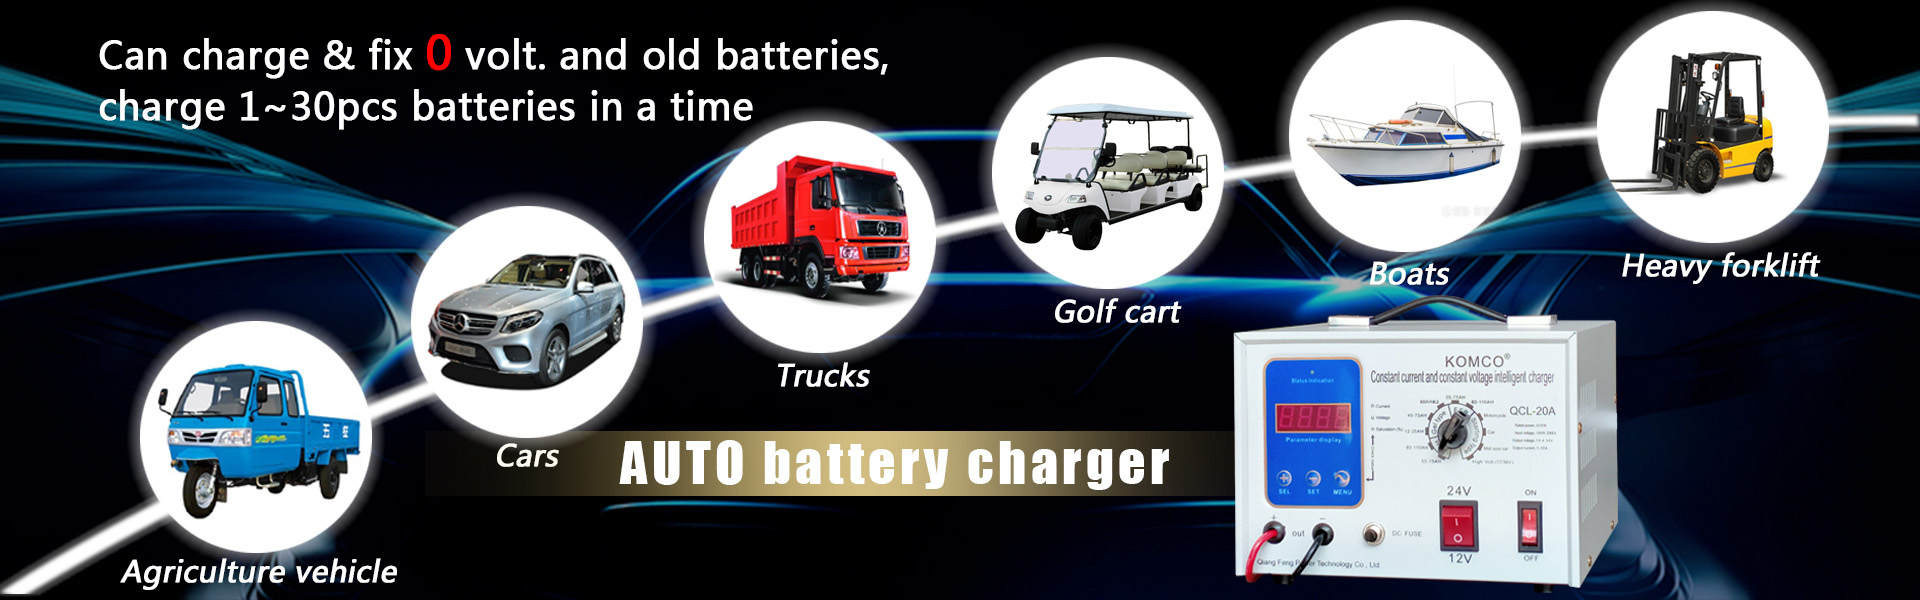 Cargador de batería de automóvil, cargador de batería Automático, cargador de batería 12V 24V,Qiangfeng Power Technology Co., Ltd